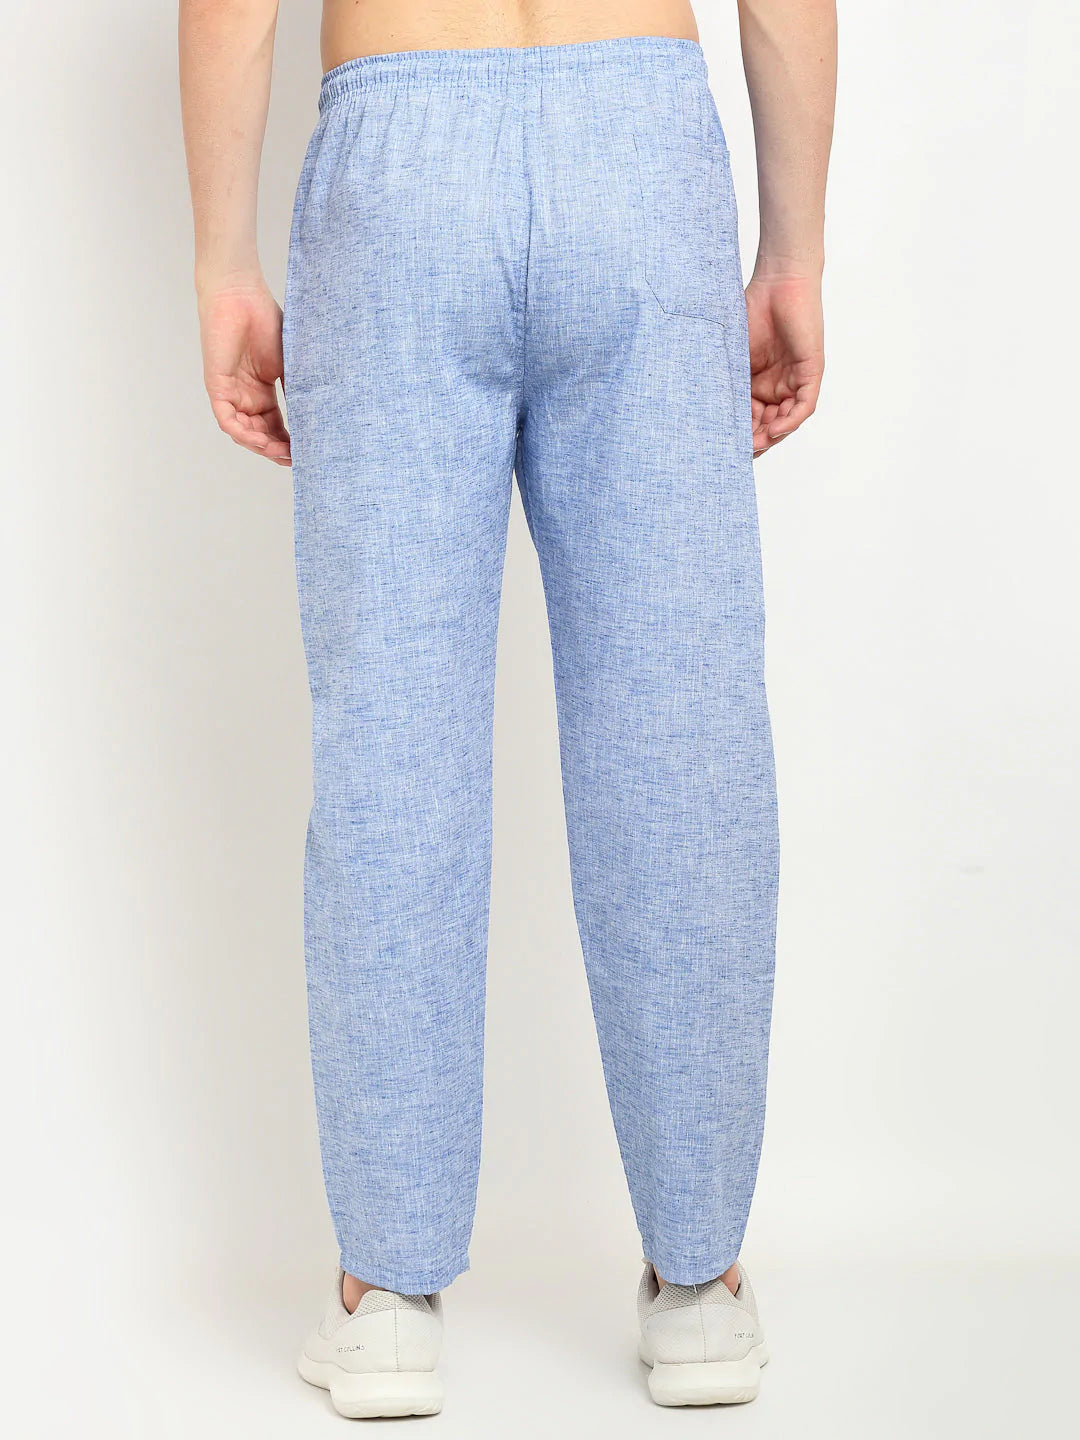 Jainish Men's Blue Linen Cotton Track Pants ( JOG 021Blue )